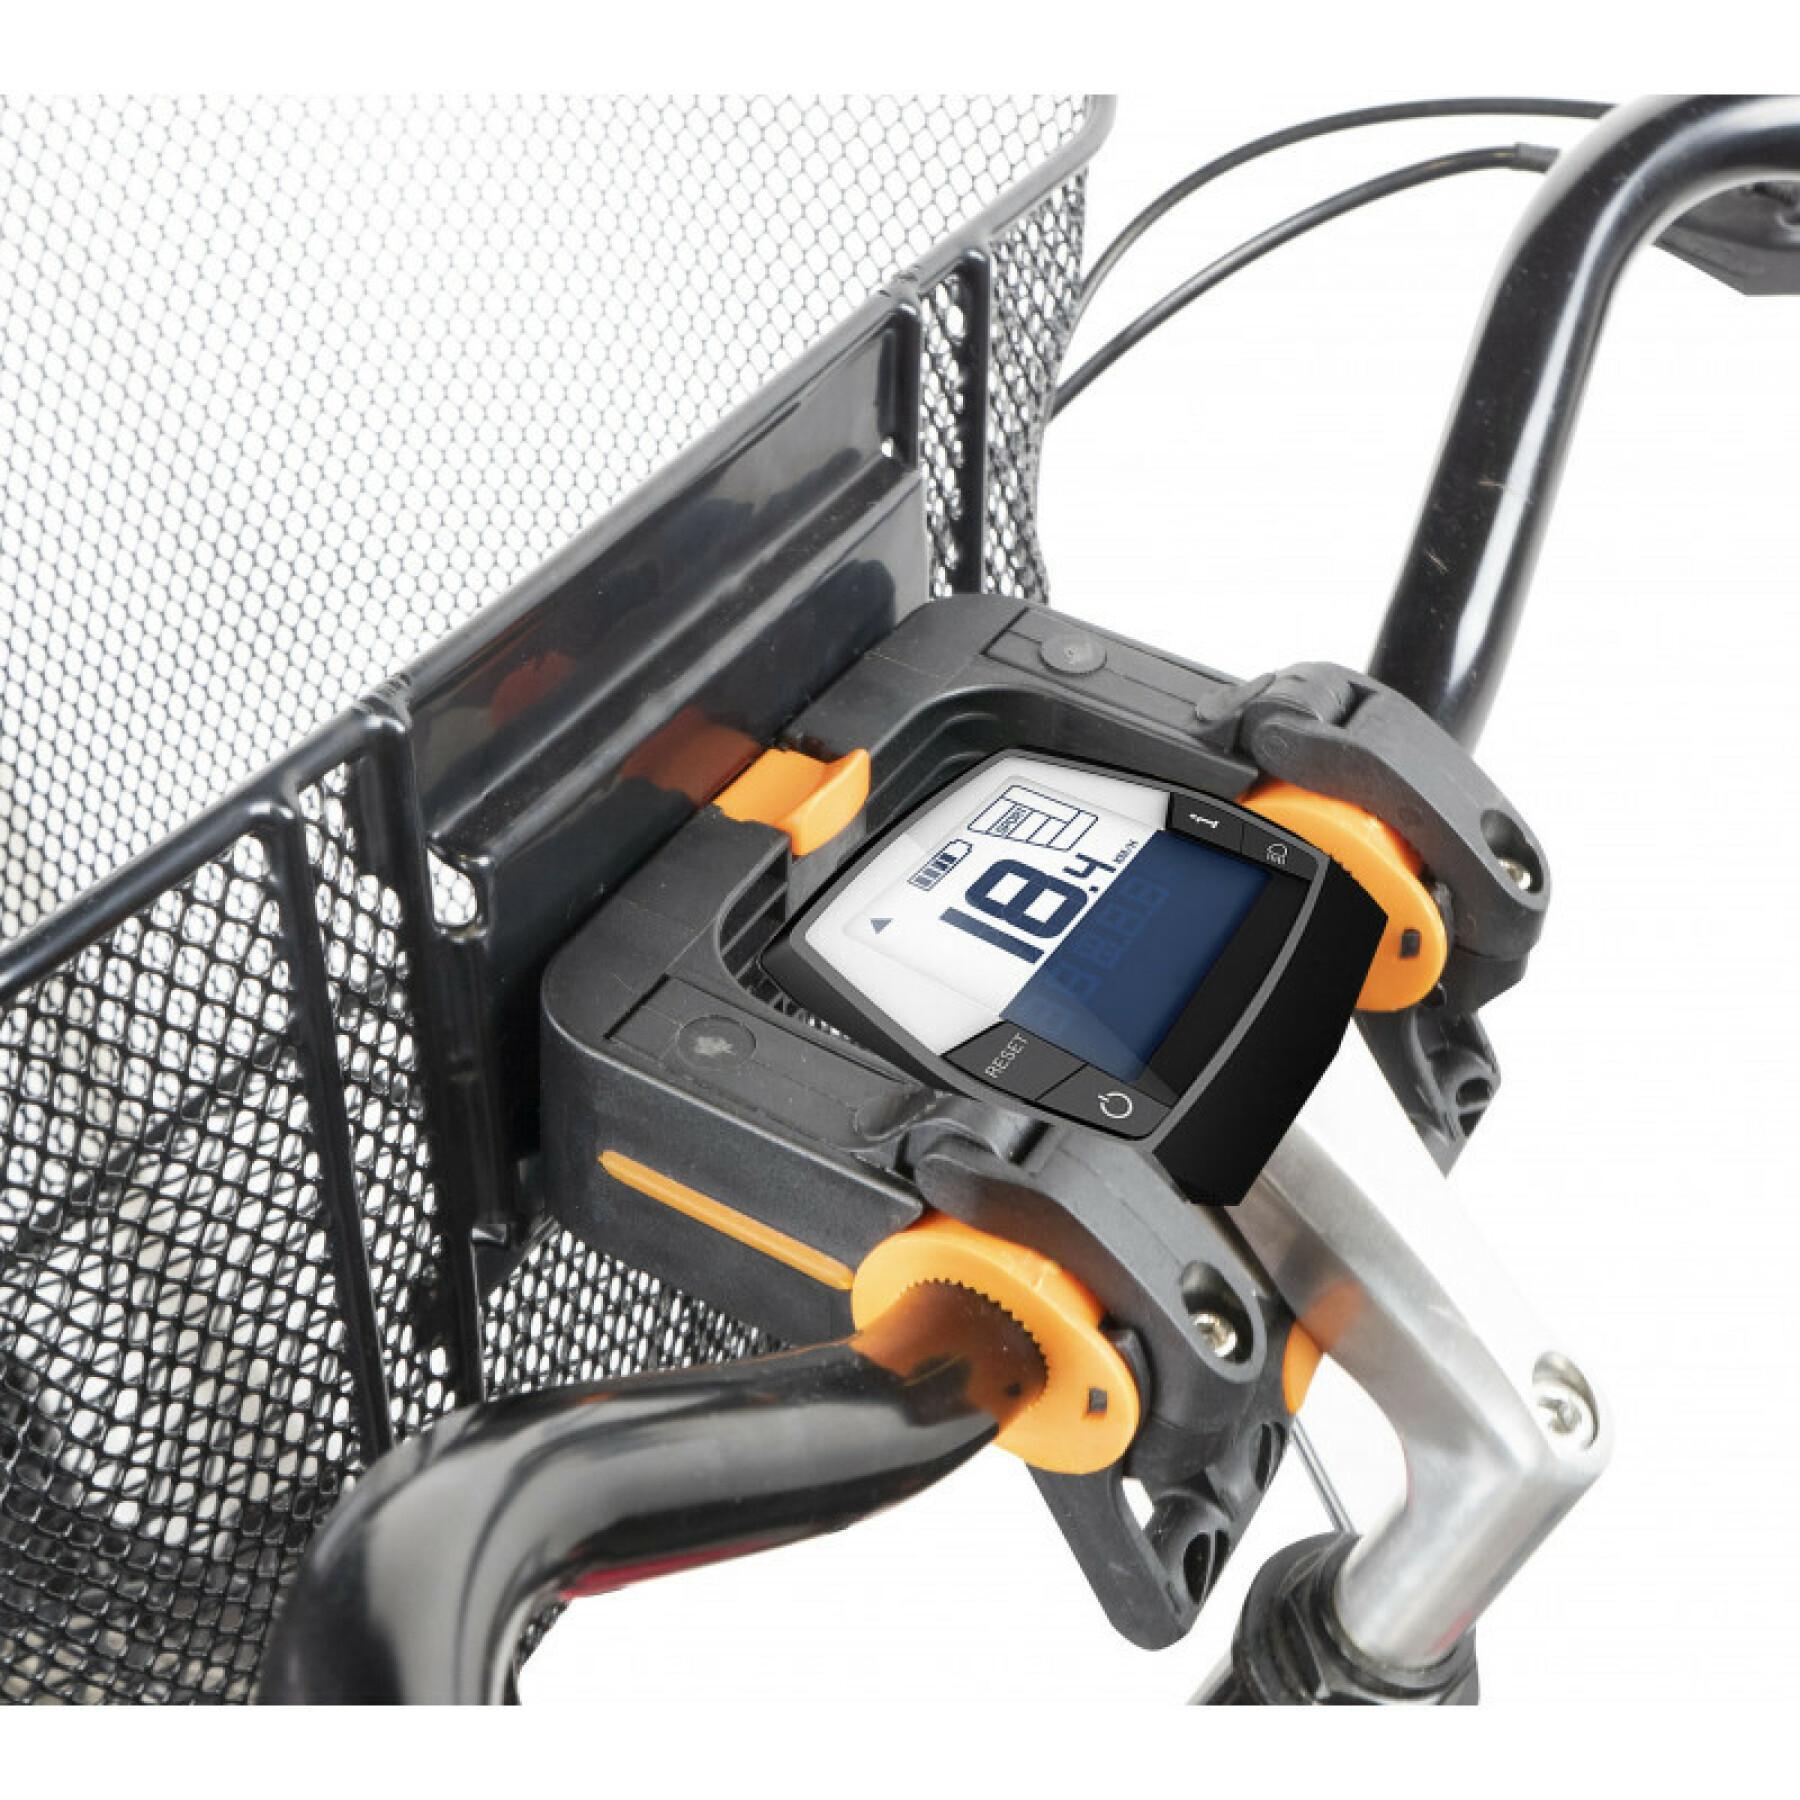 Uniwersalne mocowanie dmts kompatybilne z rowerami elektrycznymi Hapo-G